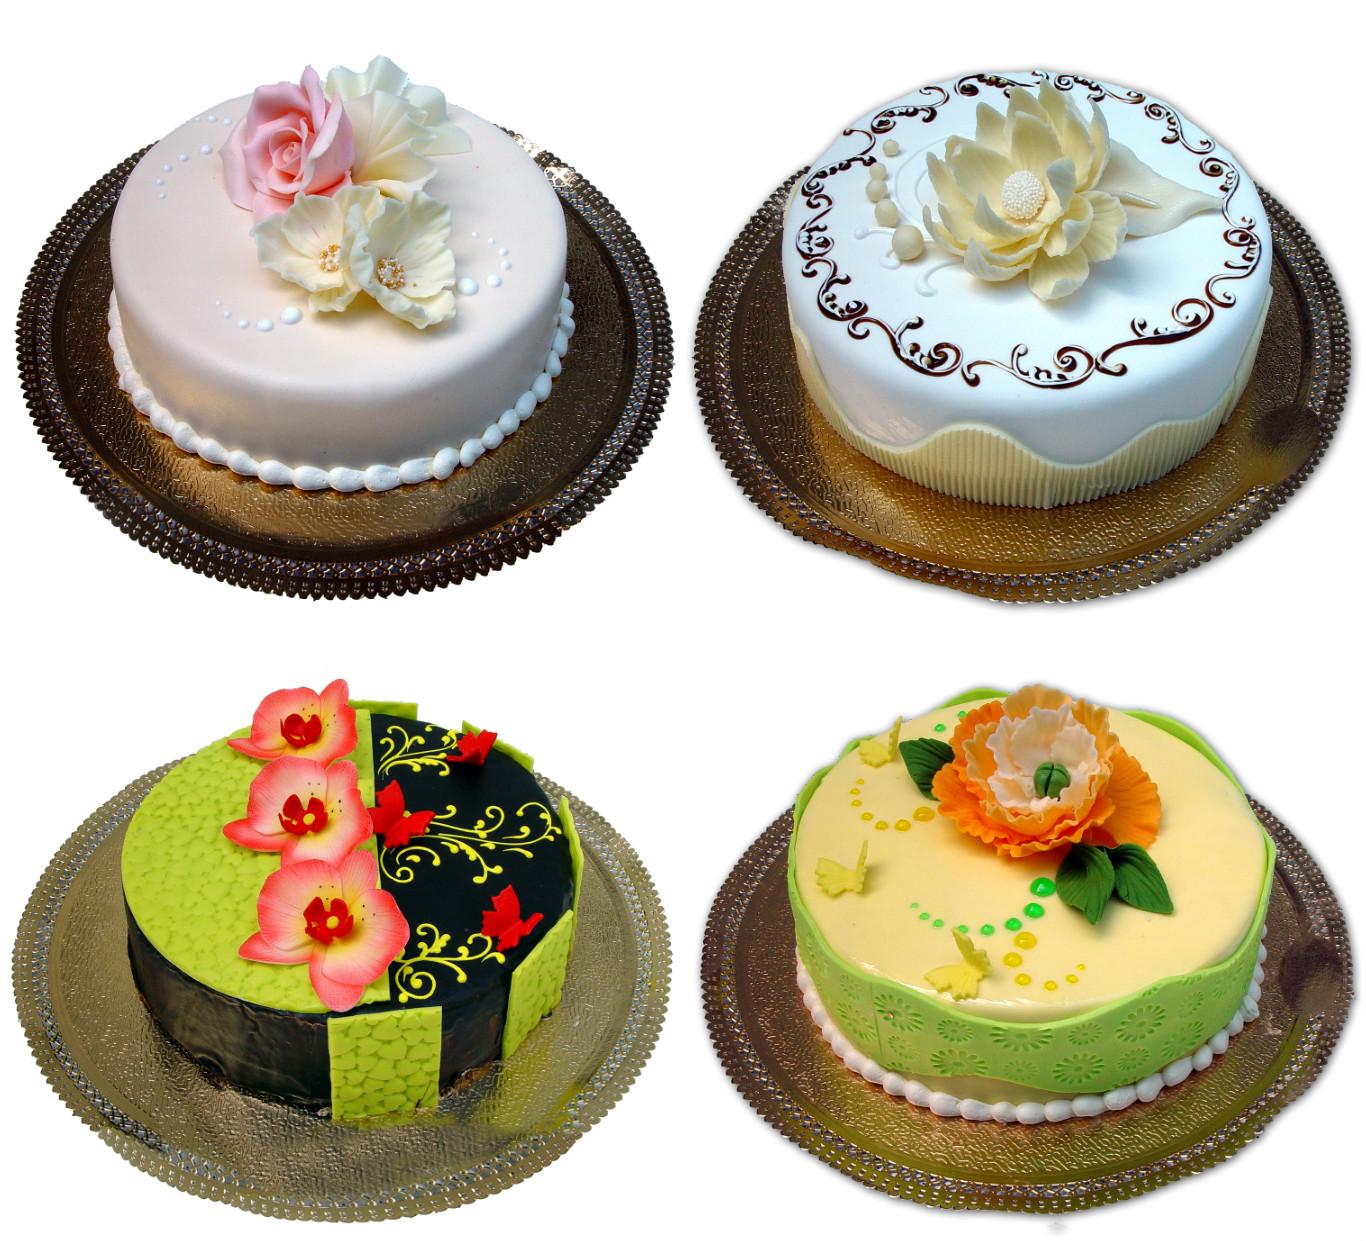 Международный день торта – праздник для сластен!